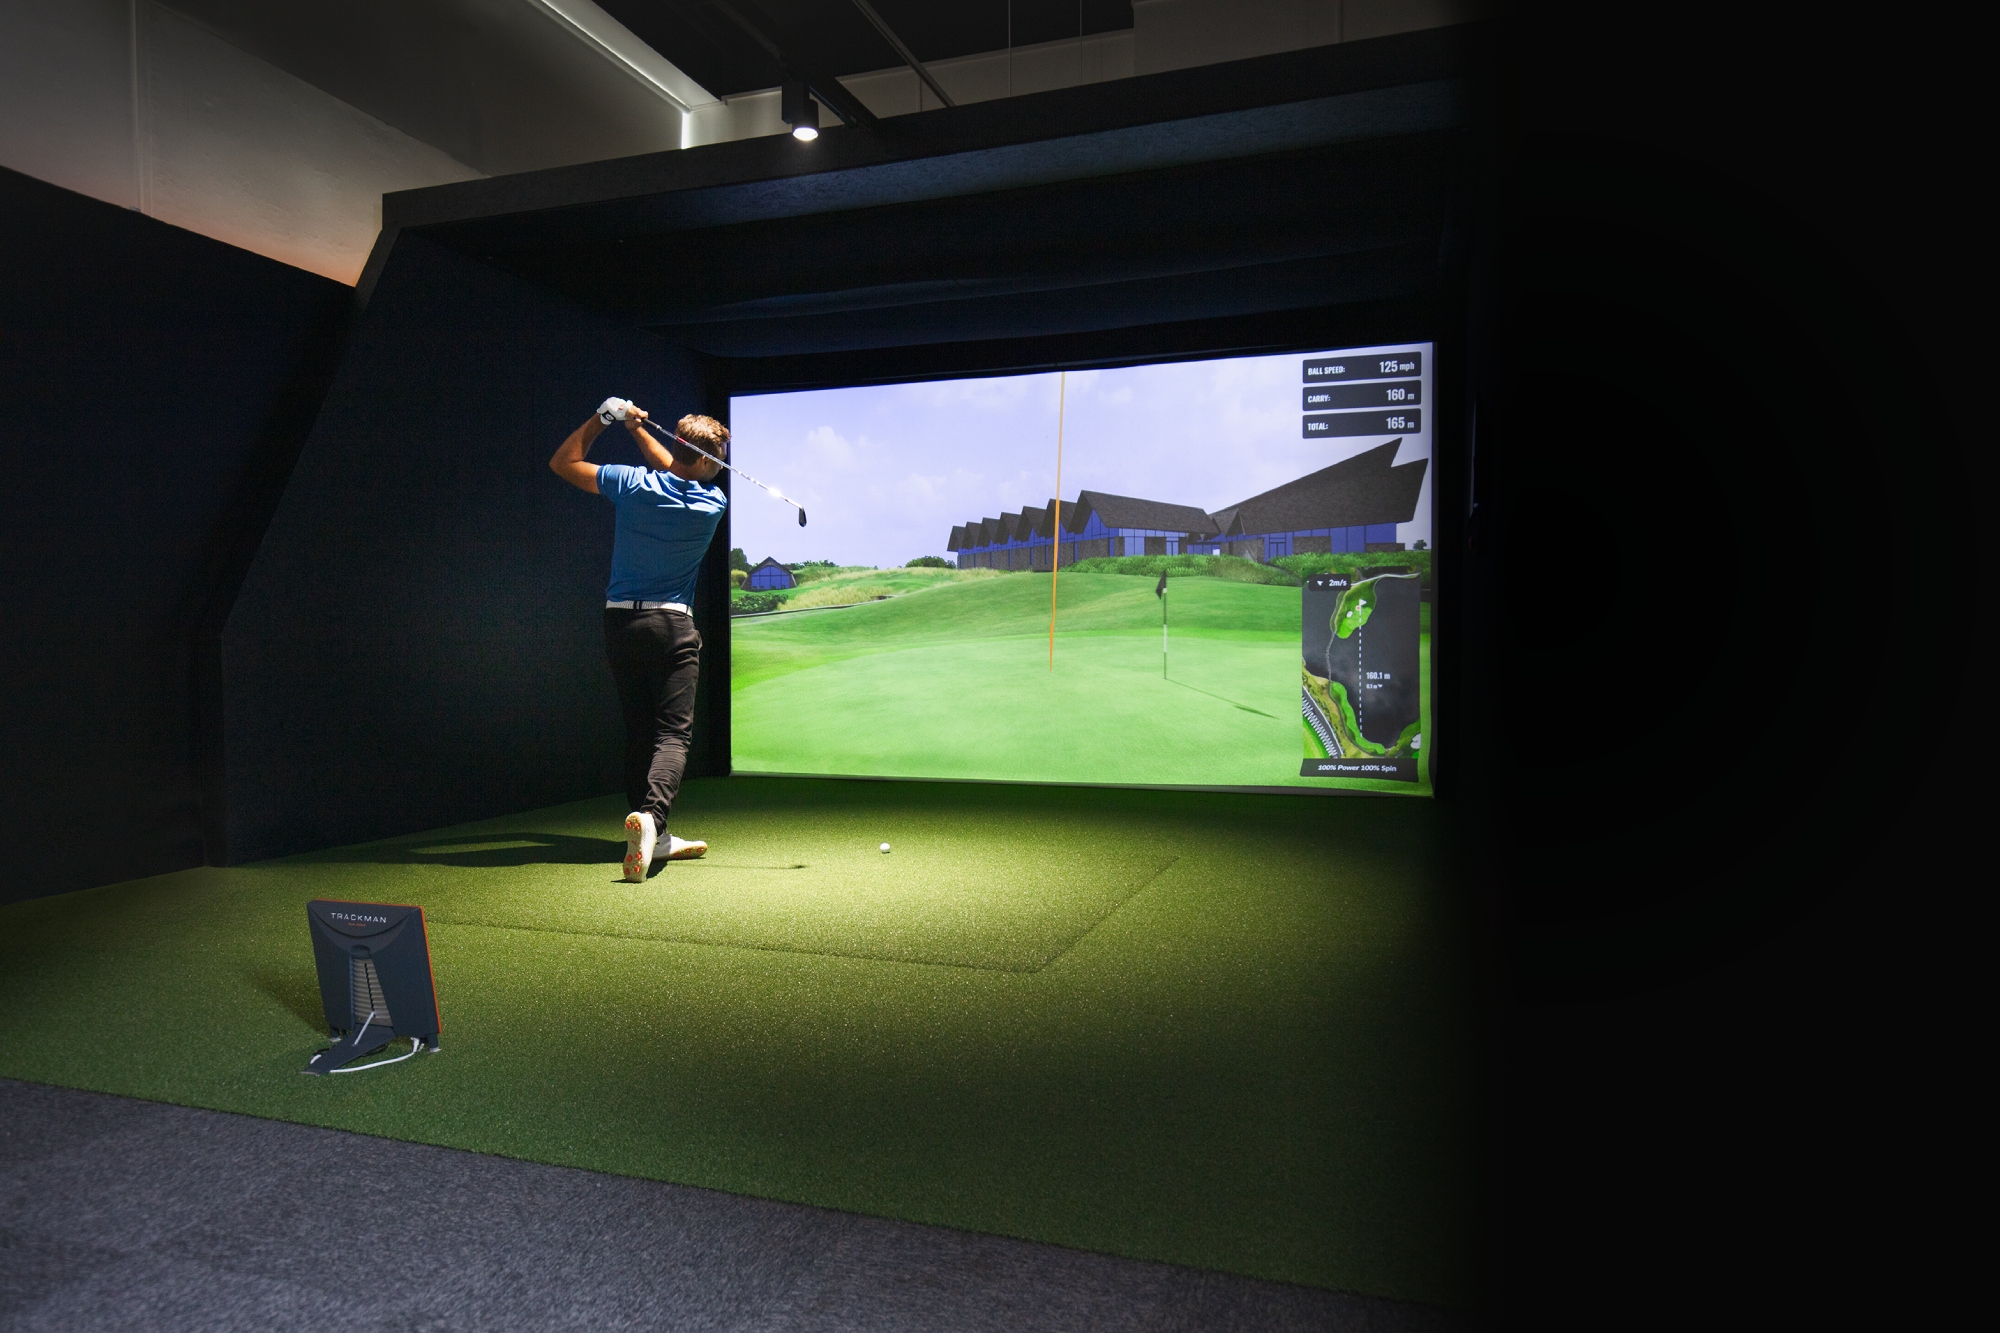 Player swinging in SIM golf simulator